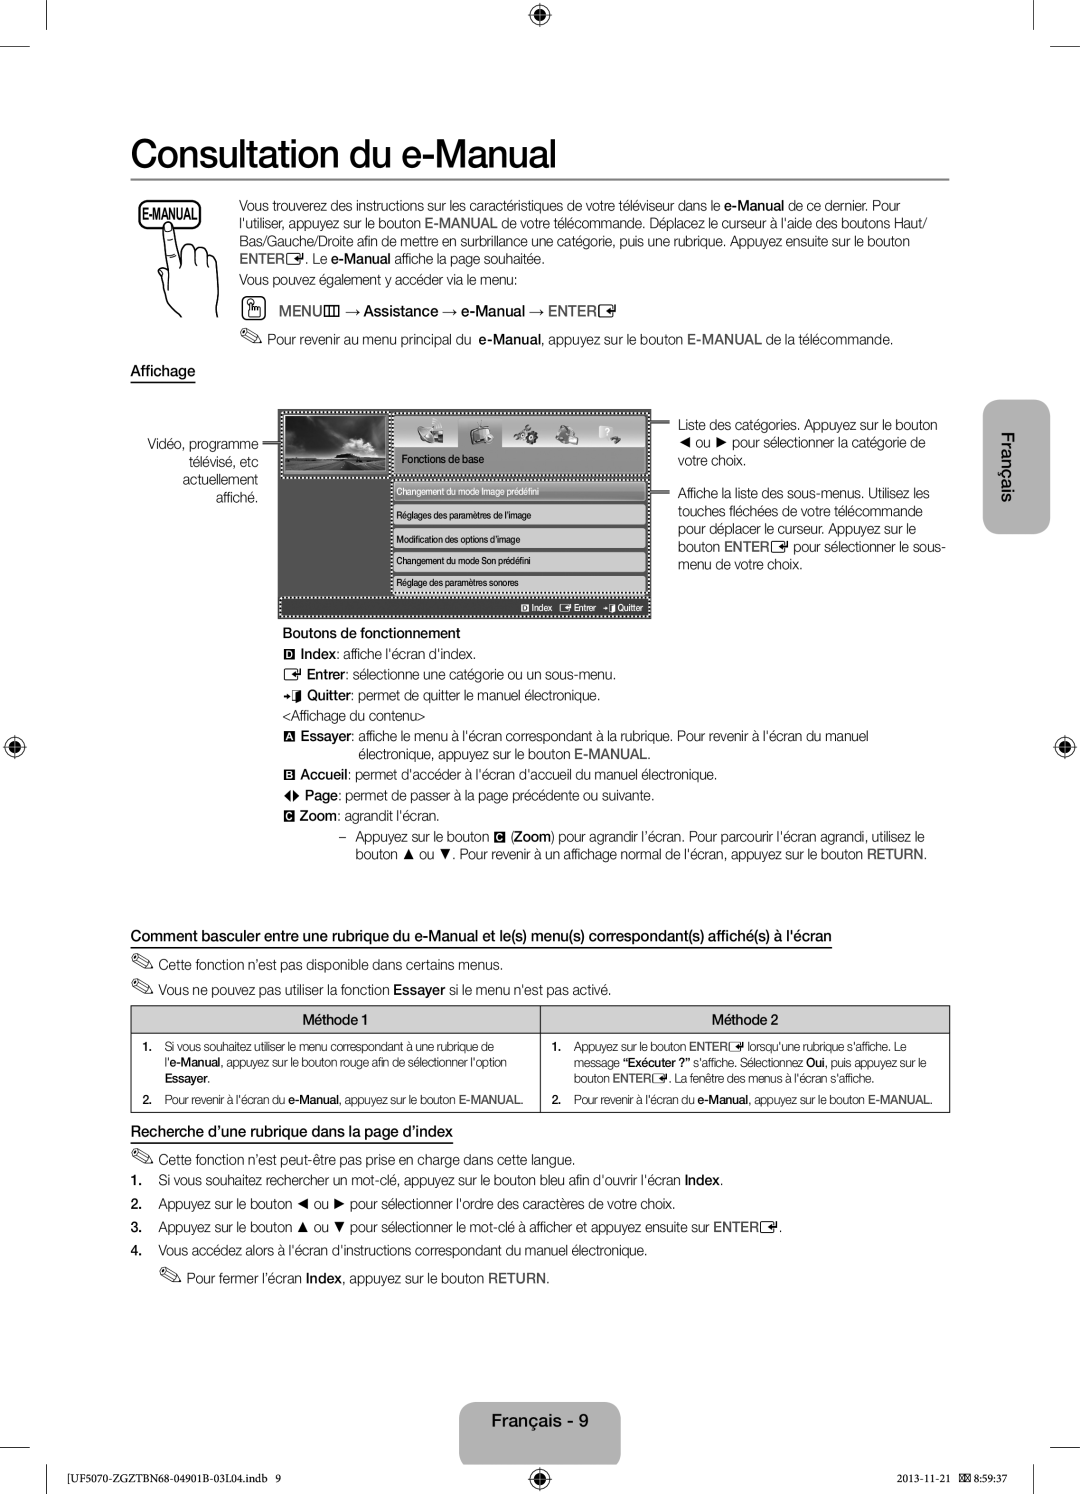 Samsung UE46F5000AWXXH Consultation du e-Manual, OO MENUm→ Assistance → e-Manual → ENTERE, Affichage, Français, E-Manual 